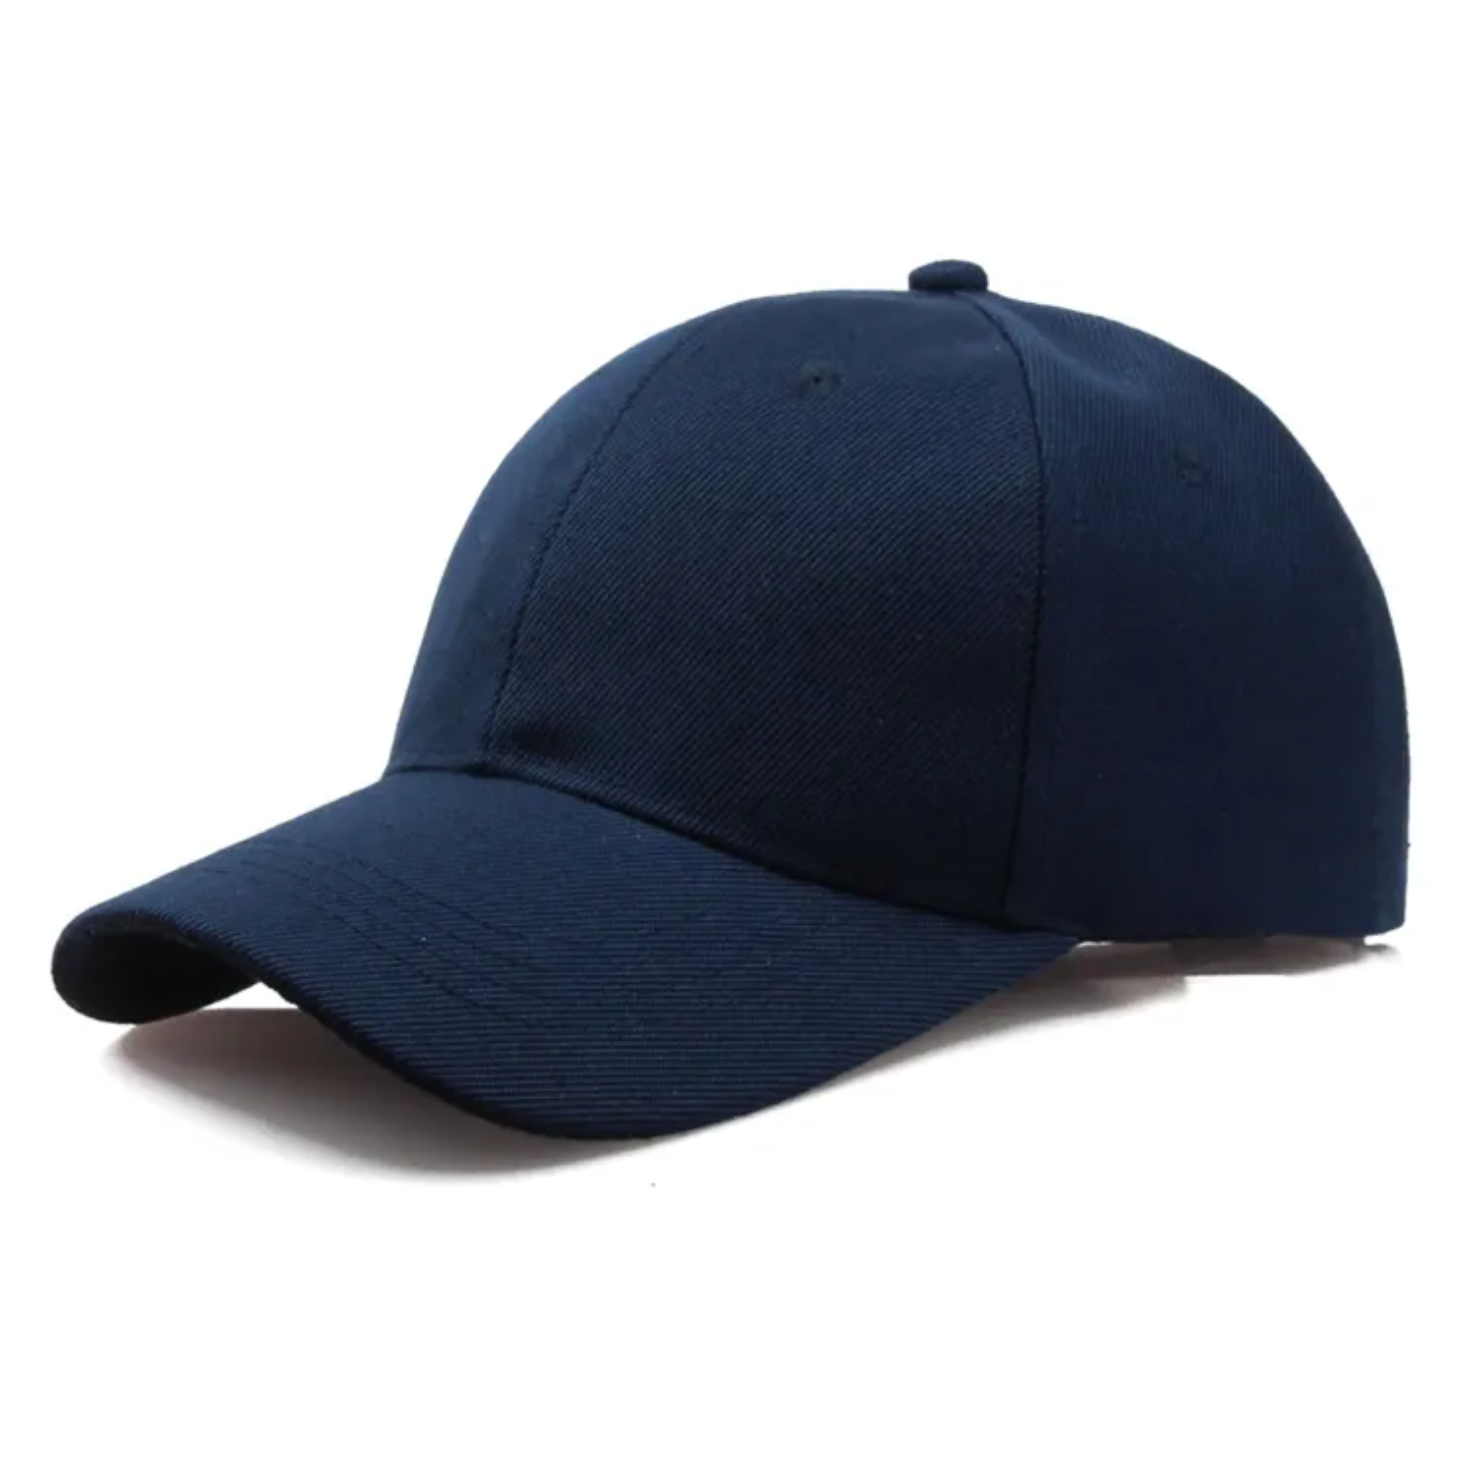 Sports Cap for Men Plain Caps for Baseball Cricket